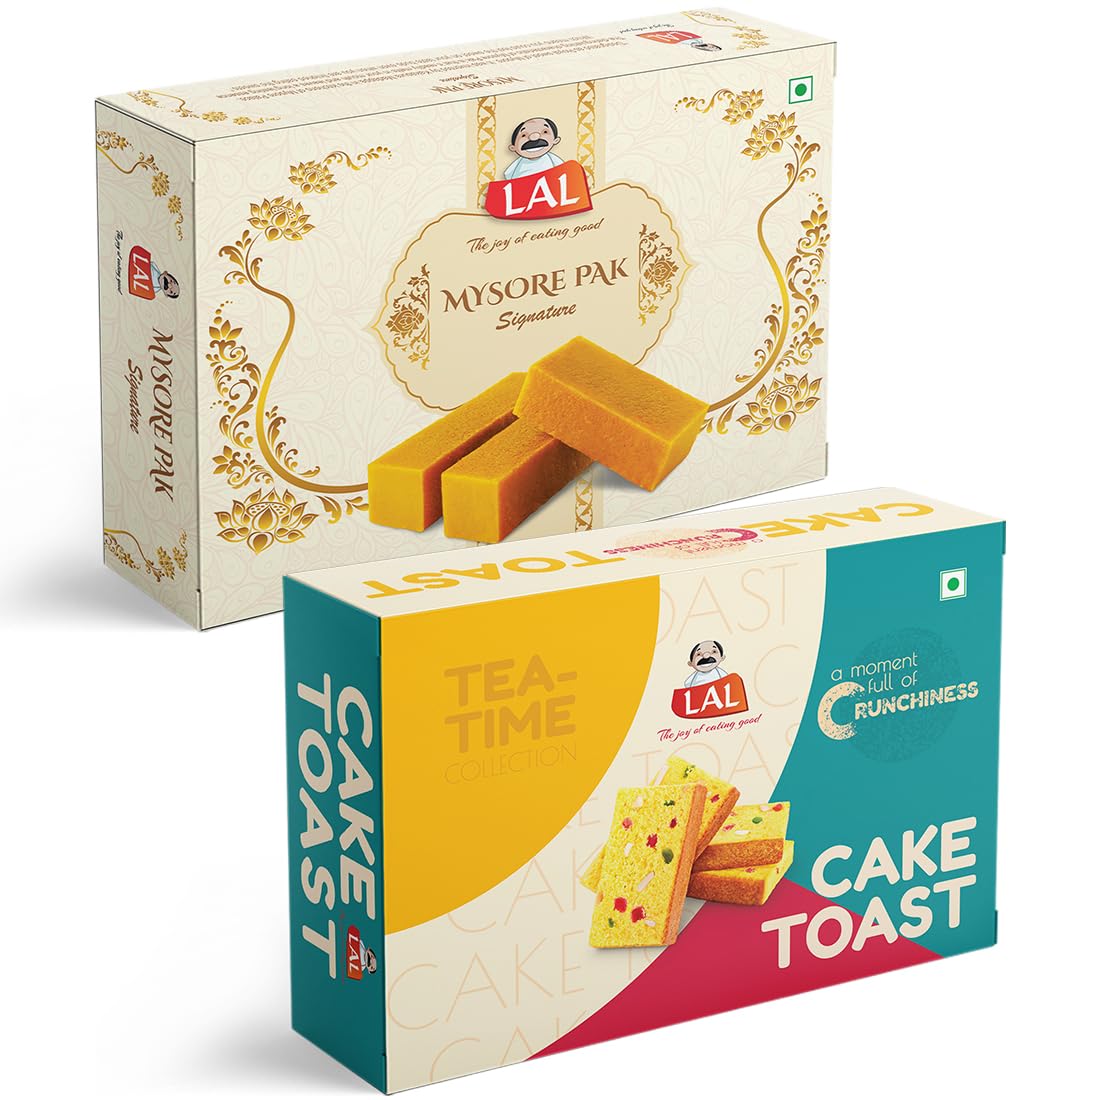 Lal Sweets Mysore Pak 400g & Cake Toast 300g